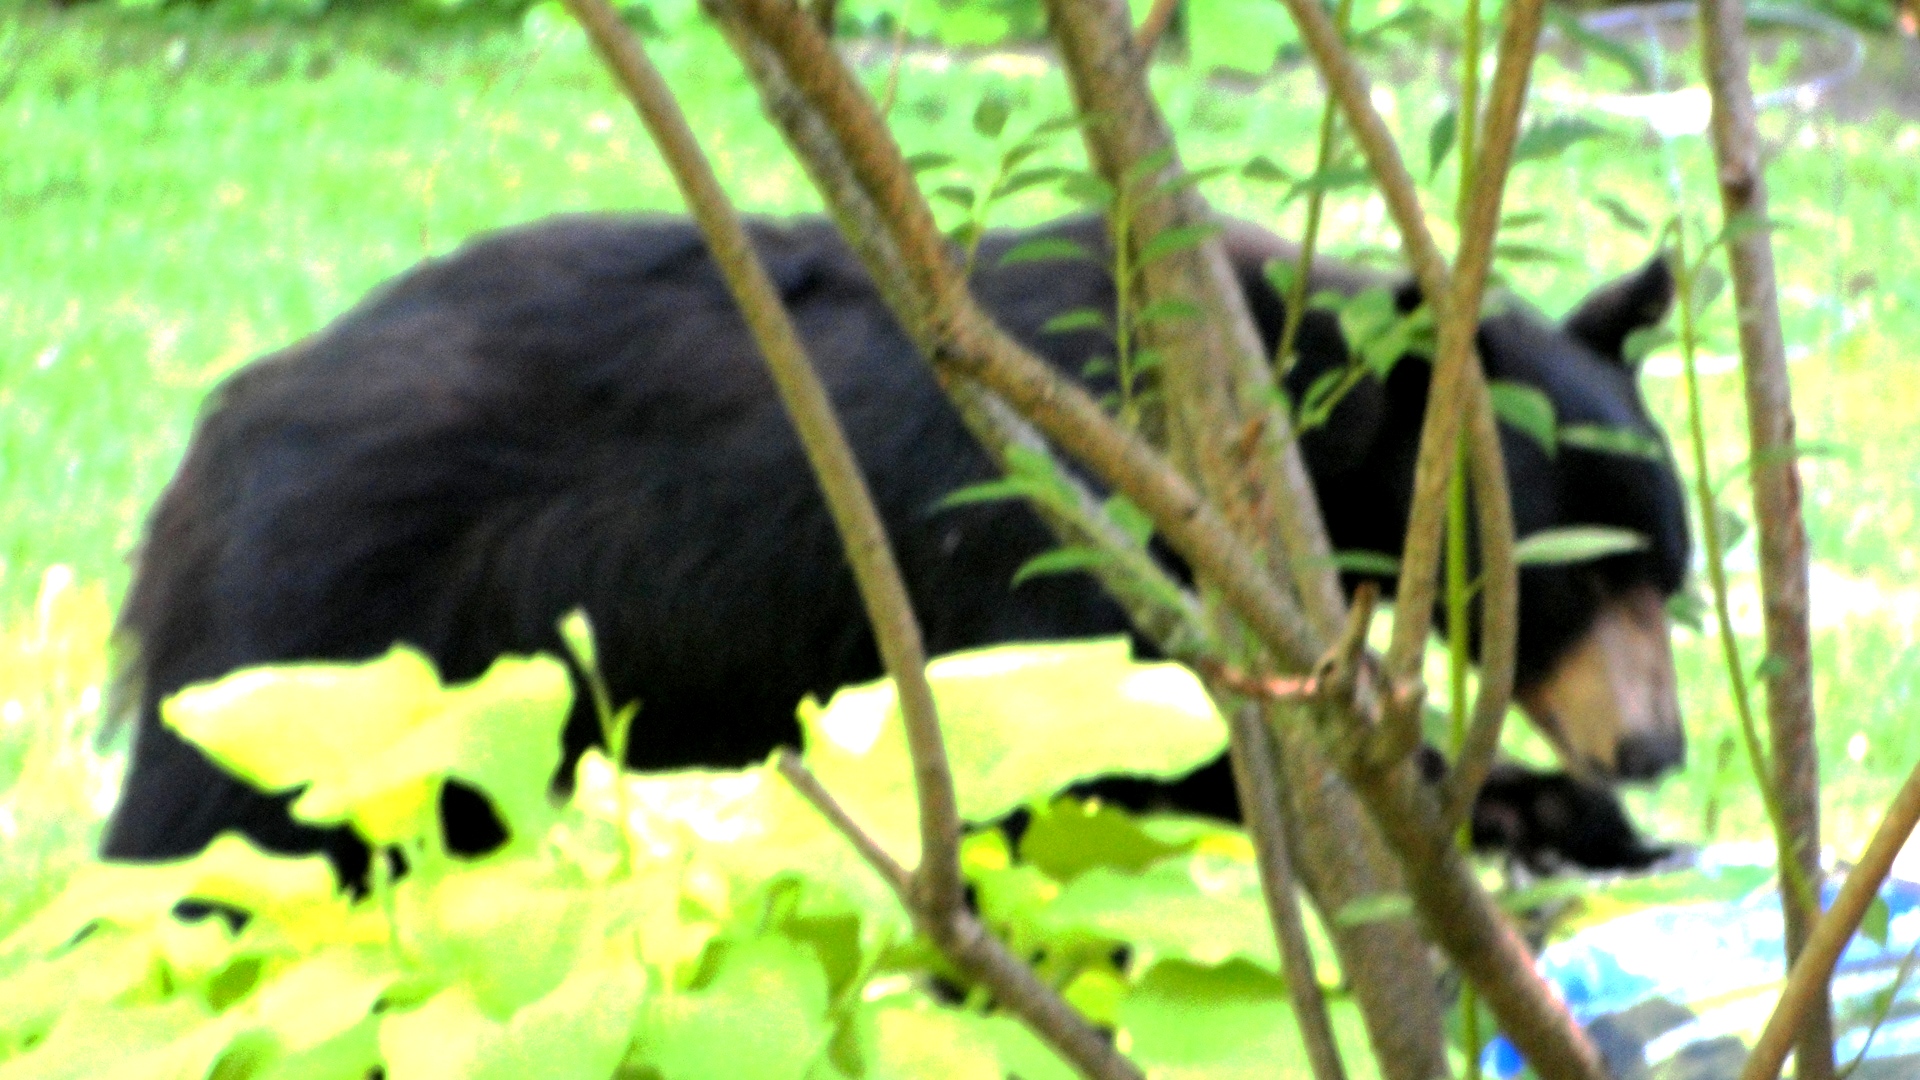 MY BACKYARD BLACK BEAR